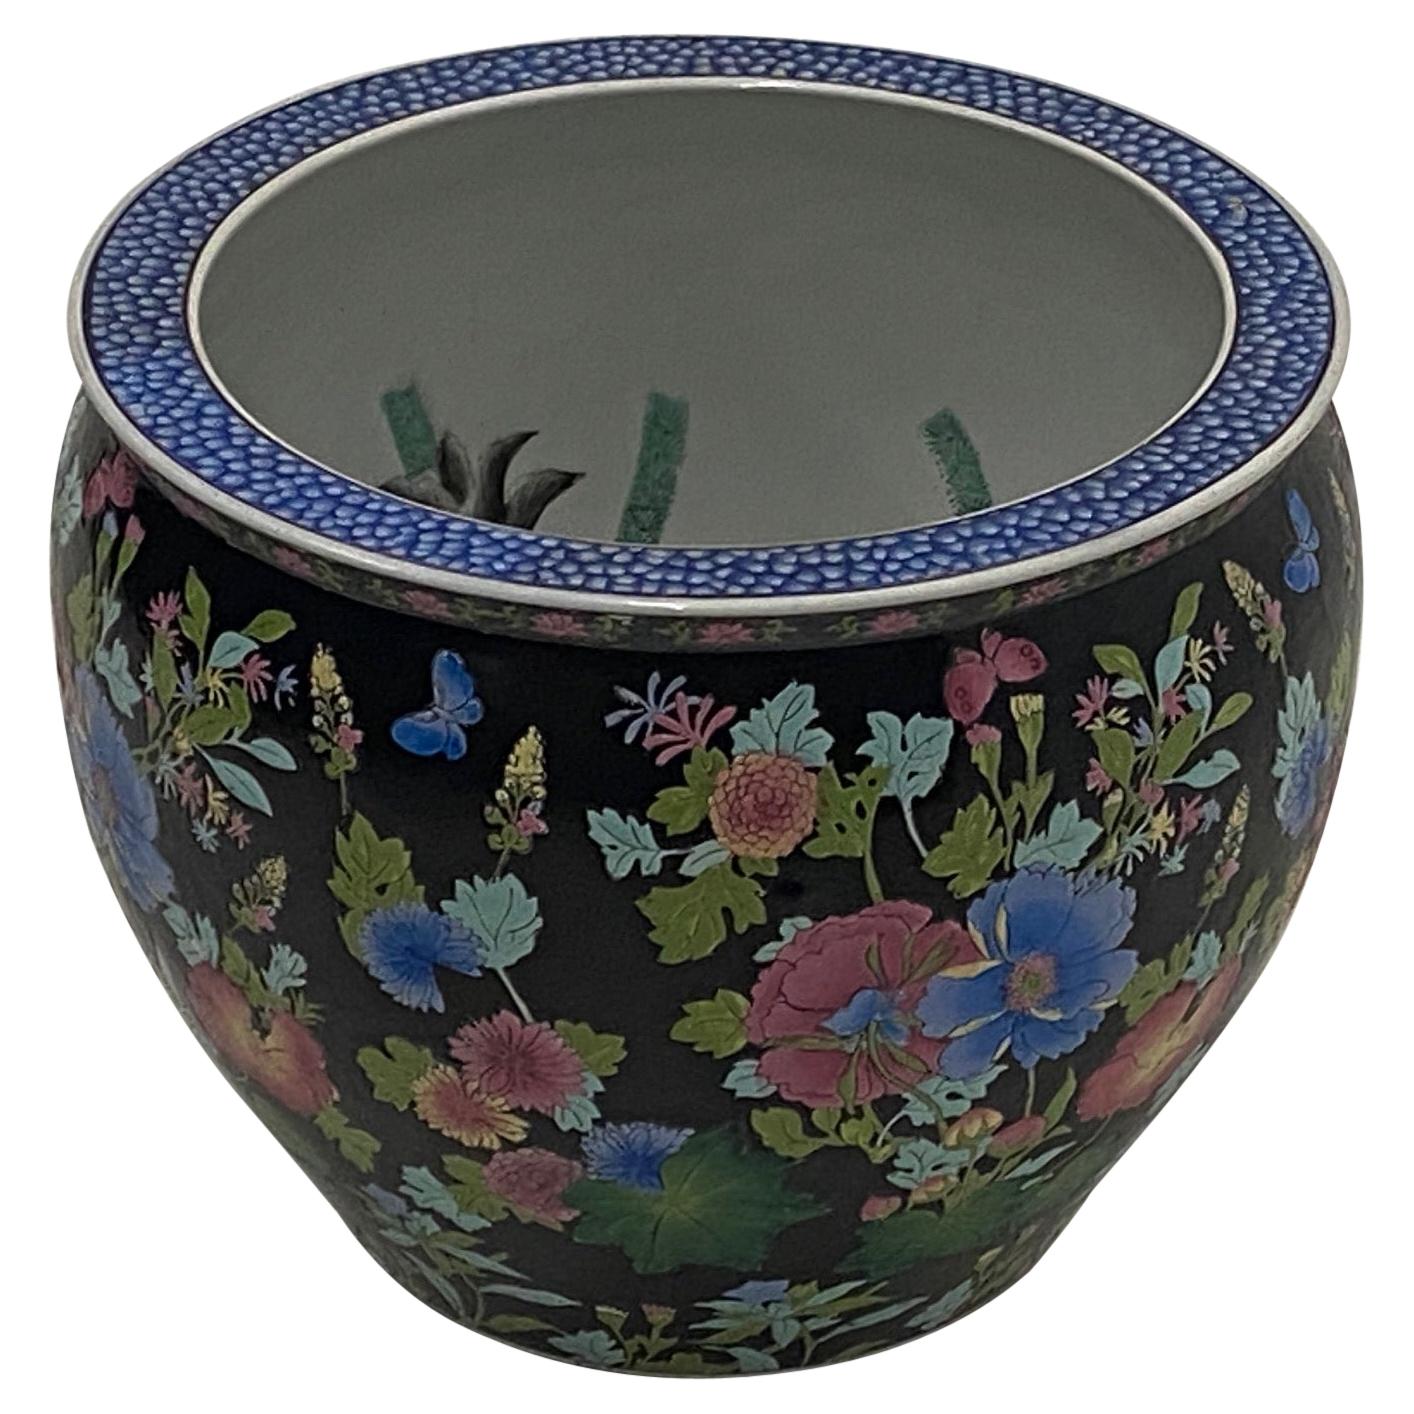 Gorgeous Famille Noire Porcelain Fish Bowl